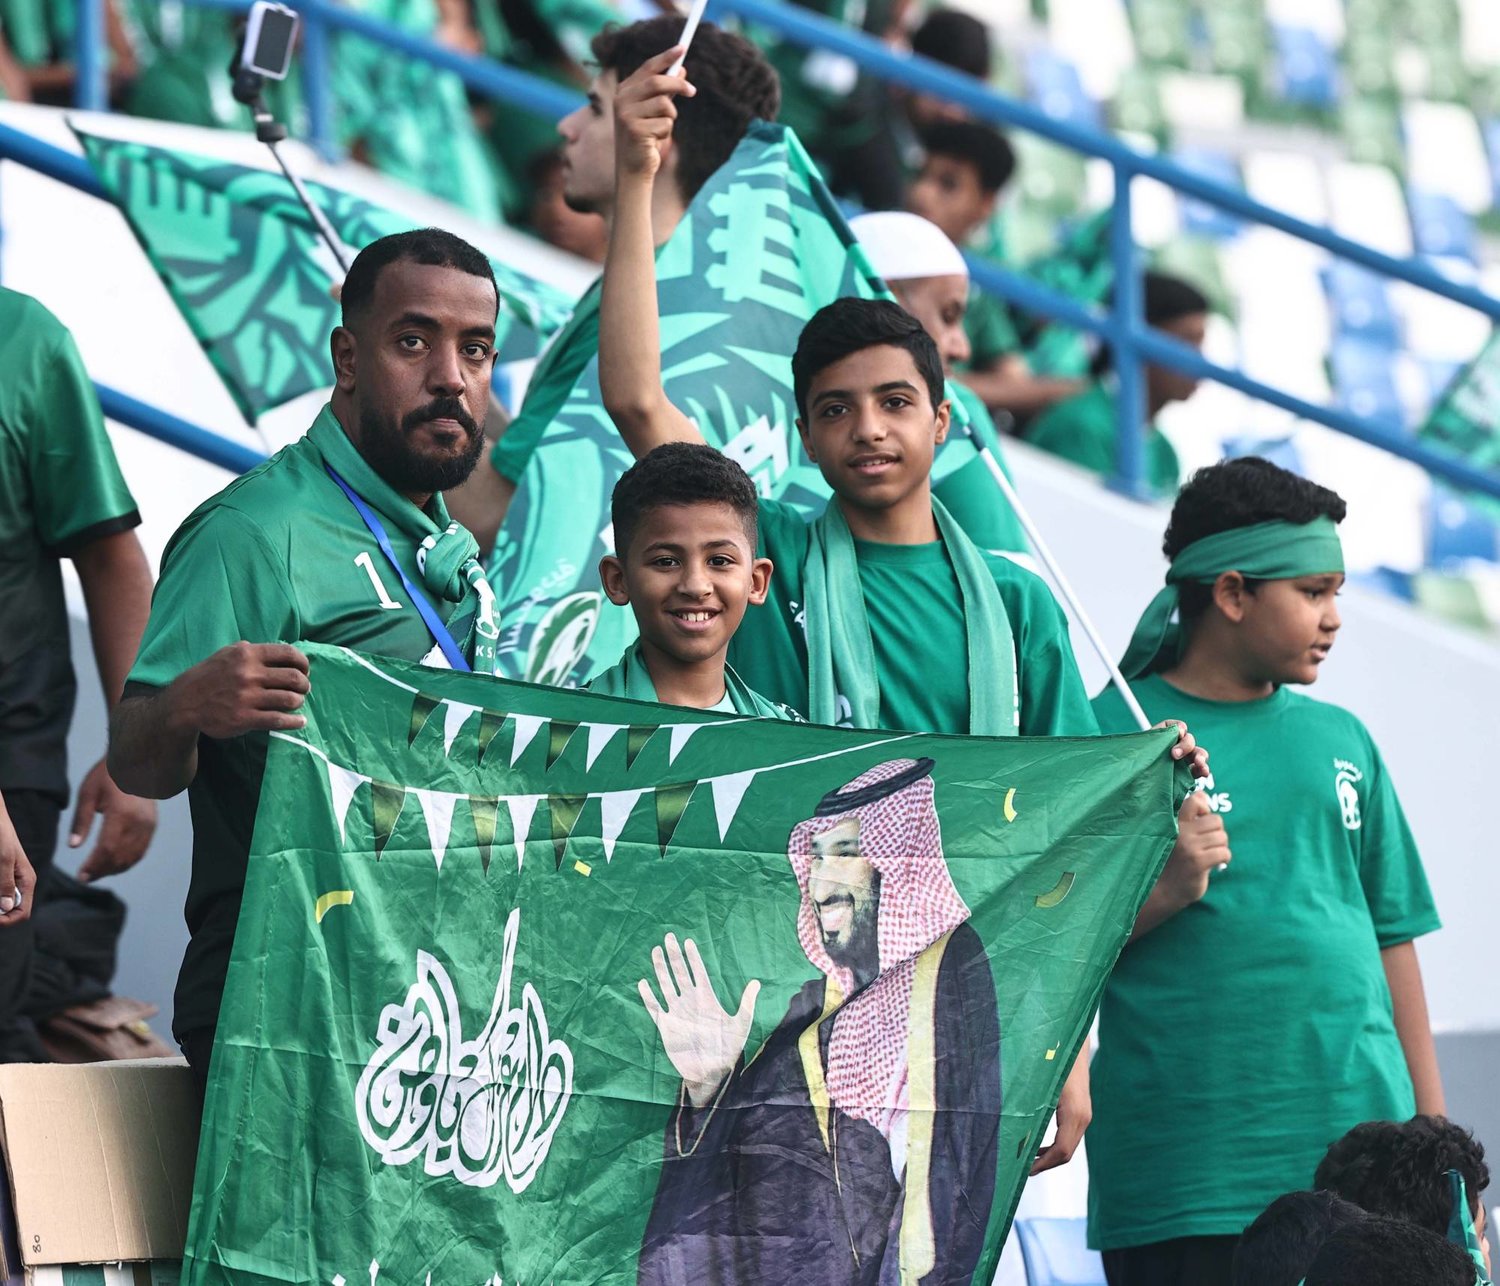 فازت السعودية بالتنظيم بأصوات كاسحة عن بقية المنافسين (تصوير: عيسى الدبيسي)